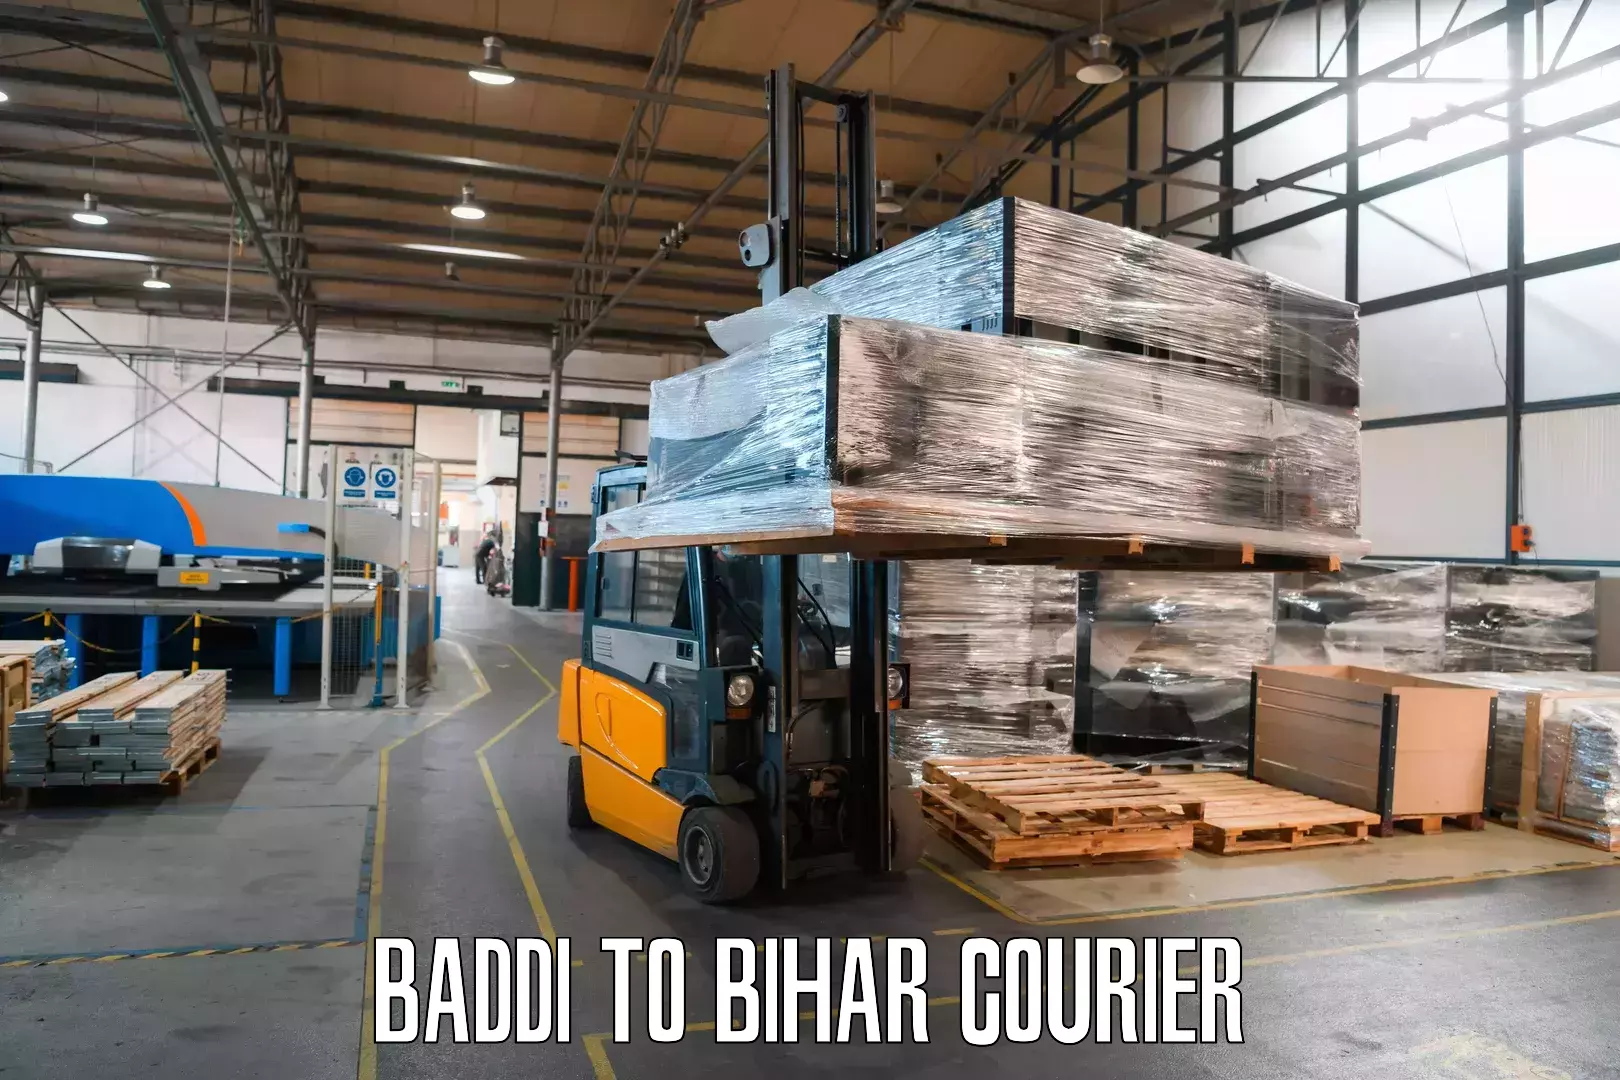 Courier service comparison Baddi to Motipur